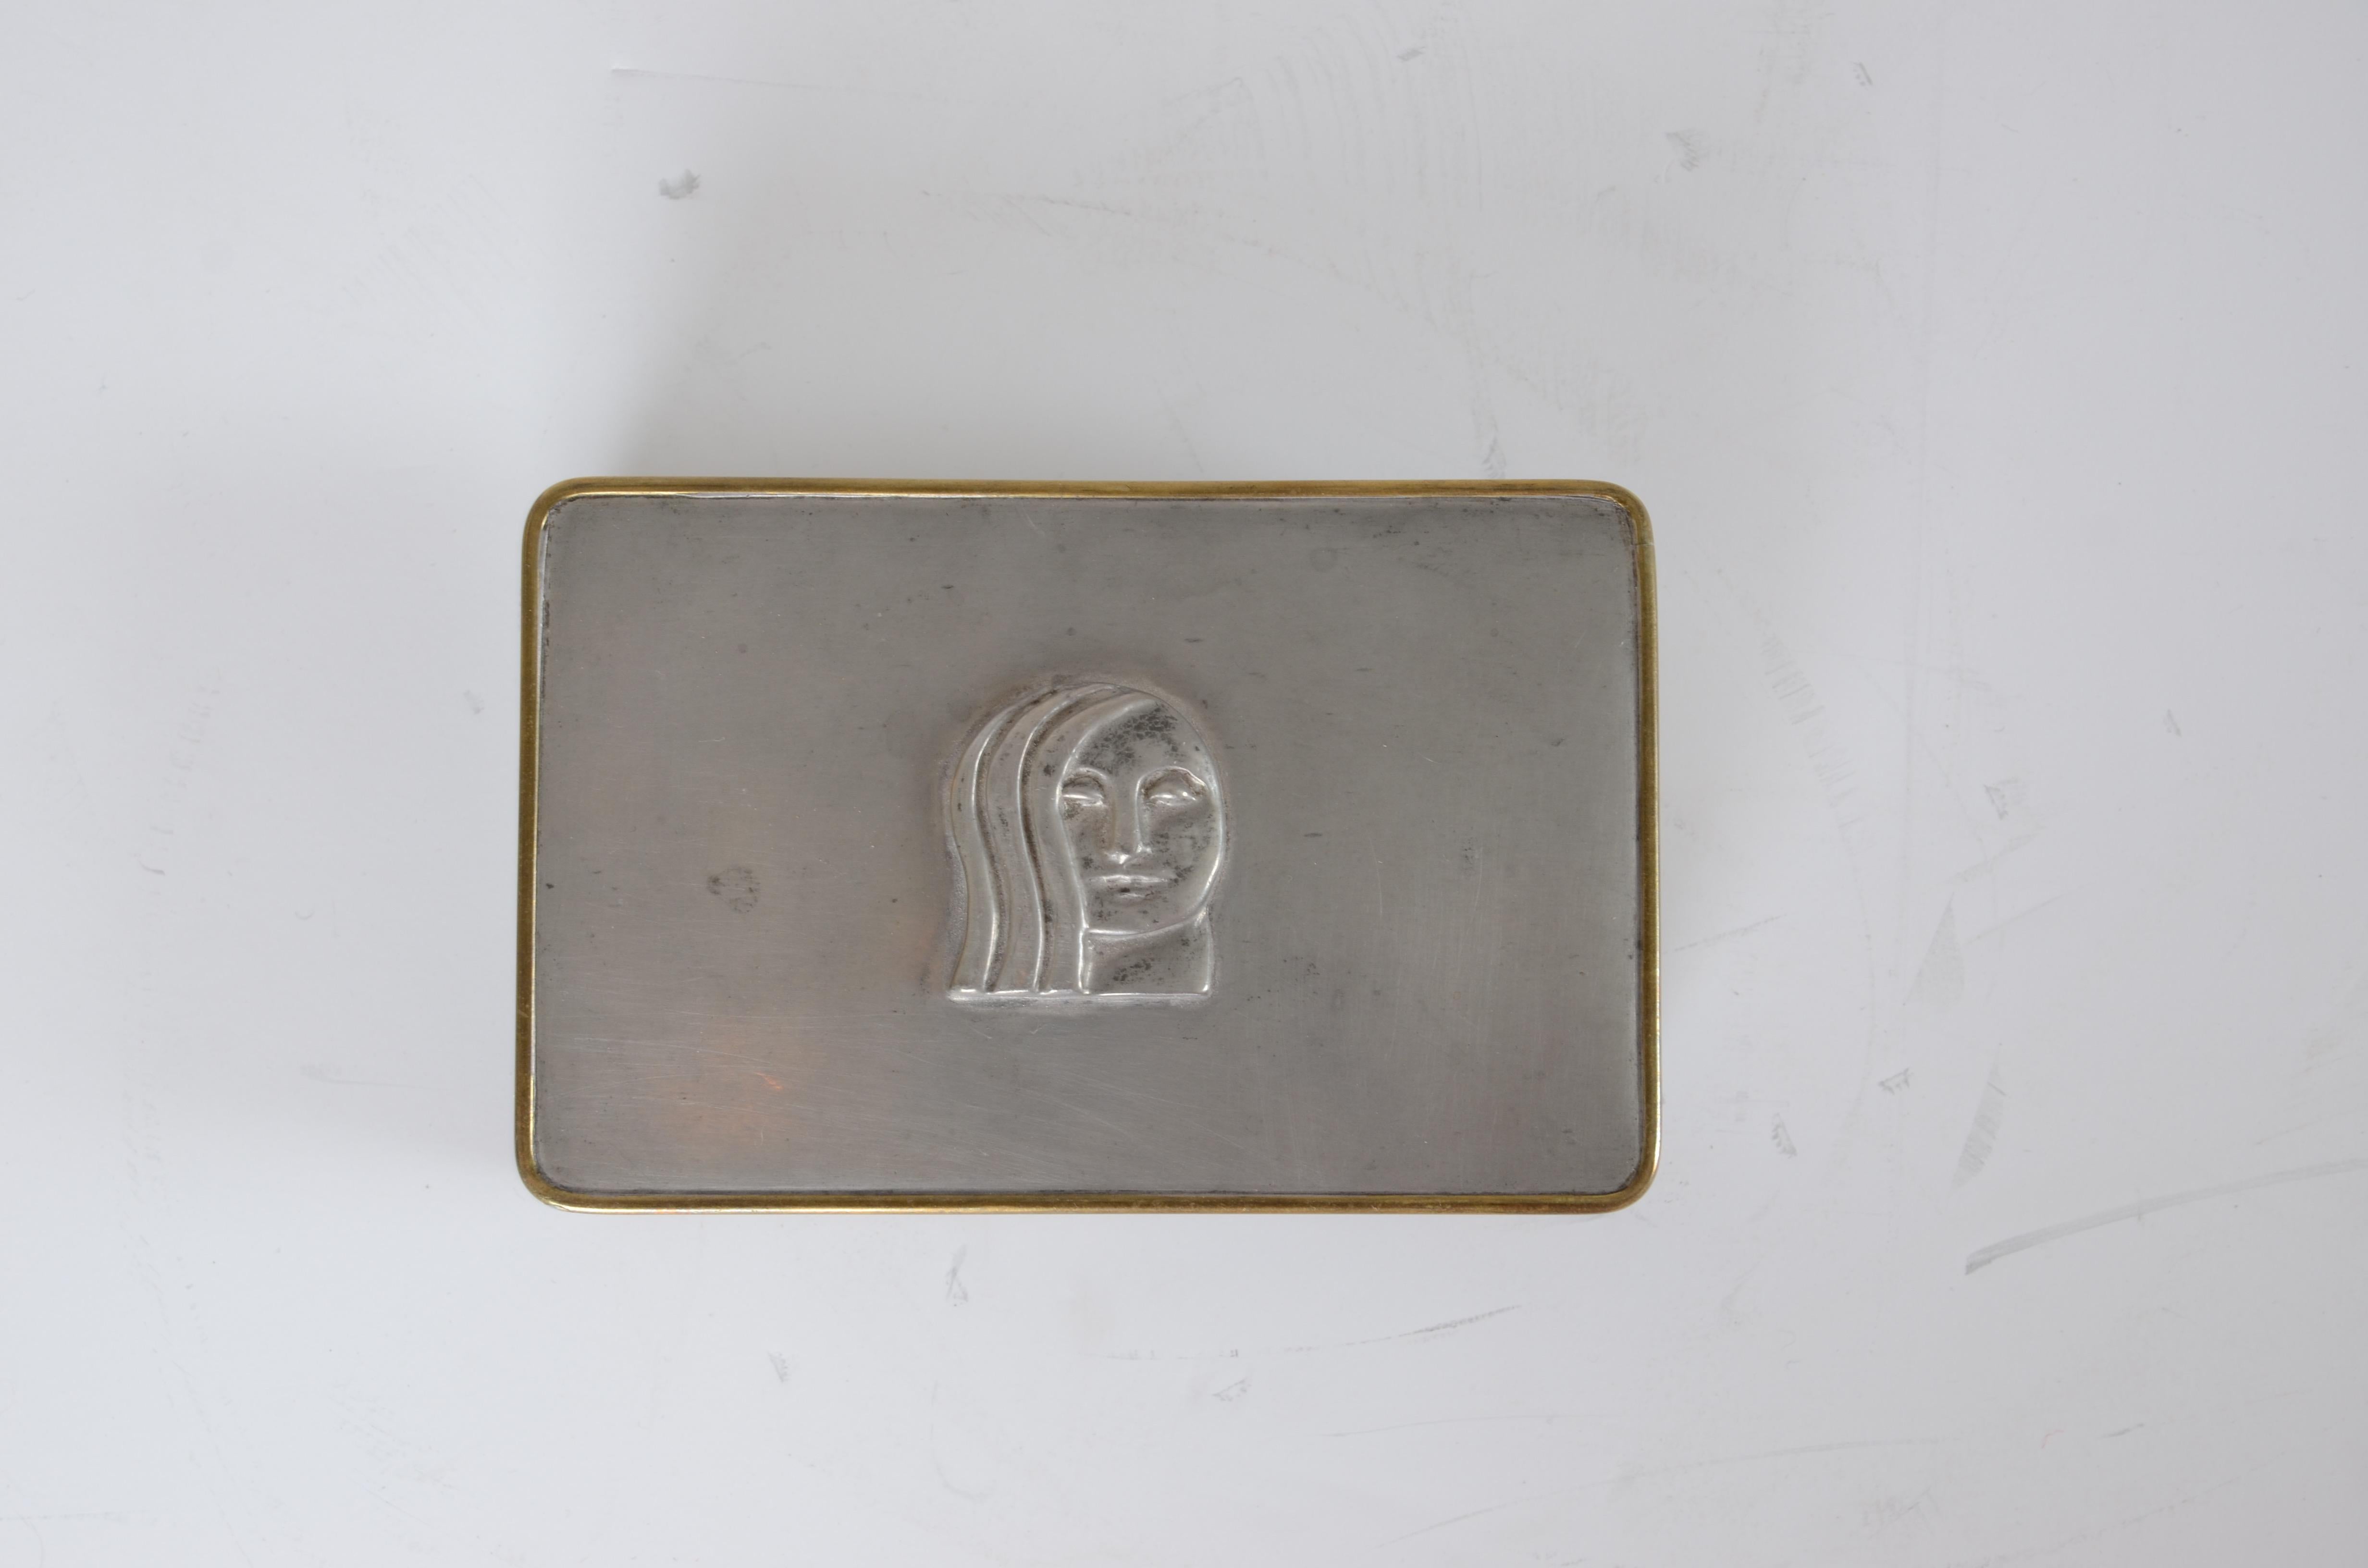 Dose aus Messing und Zinn mit dem Dekor eines Frauengesichts. Entworfen von Anna Petrus für die Firma Svenskt Tenn. Kennzeichnung B8 = 1928.
  